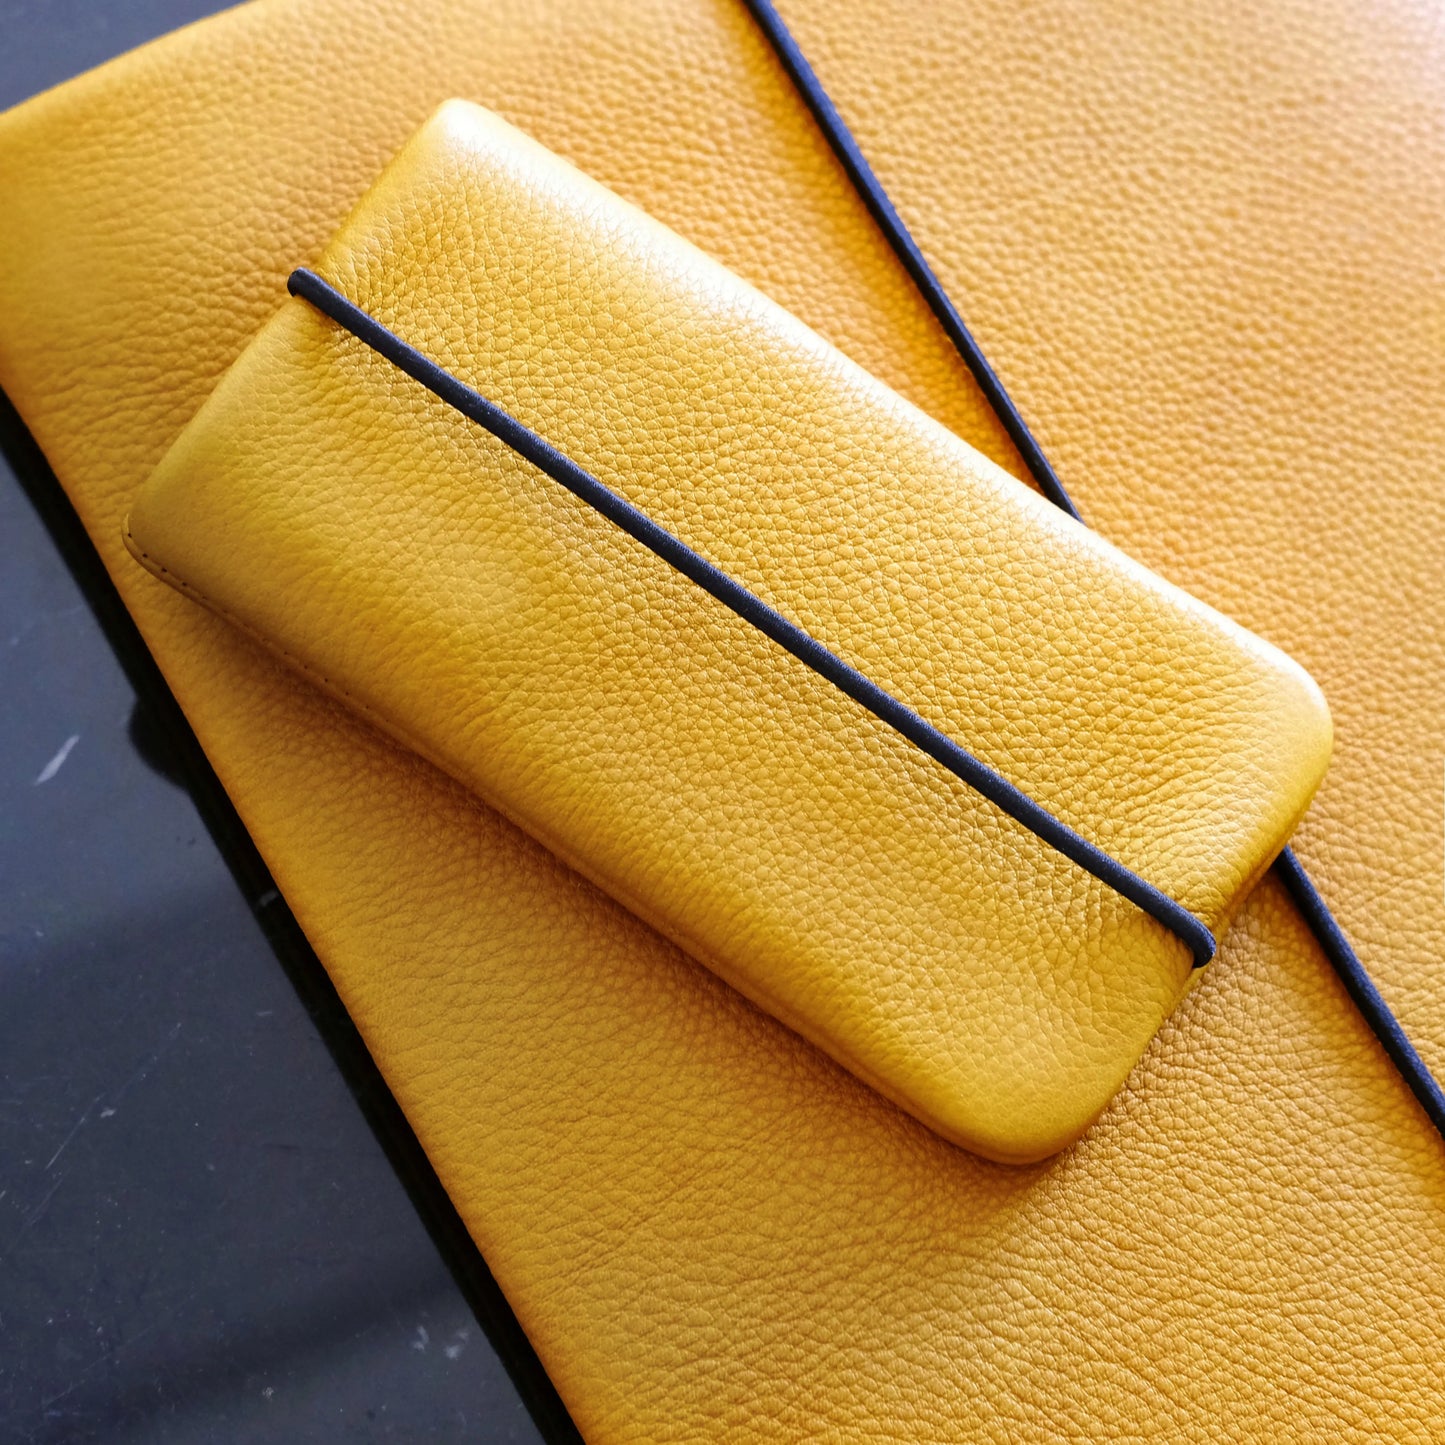 Handyhülle aus gelbem Leder liegt auf einer gelben Macbookhülle aus Leder